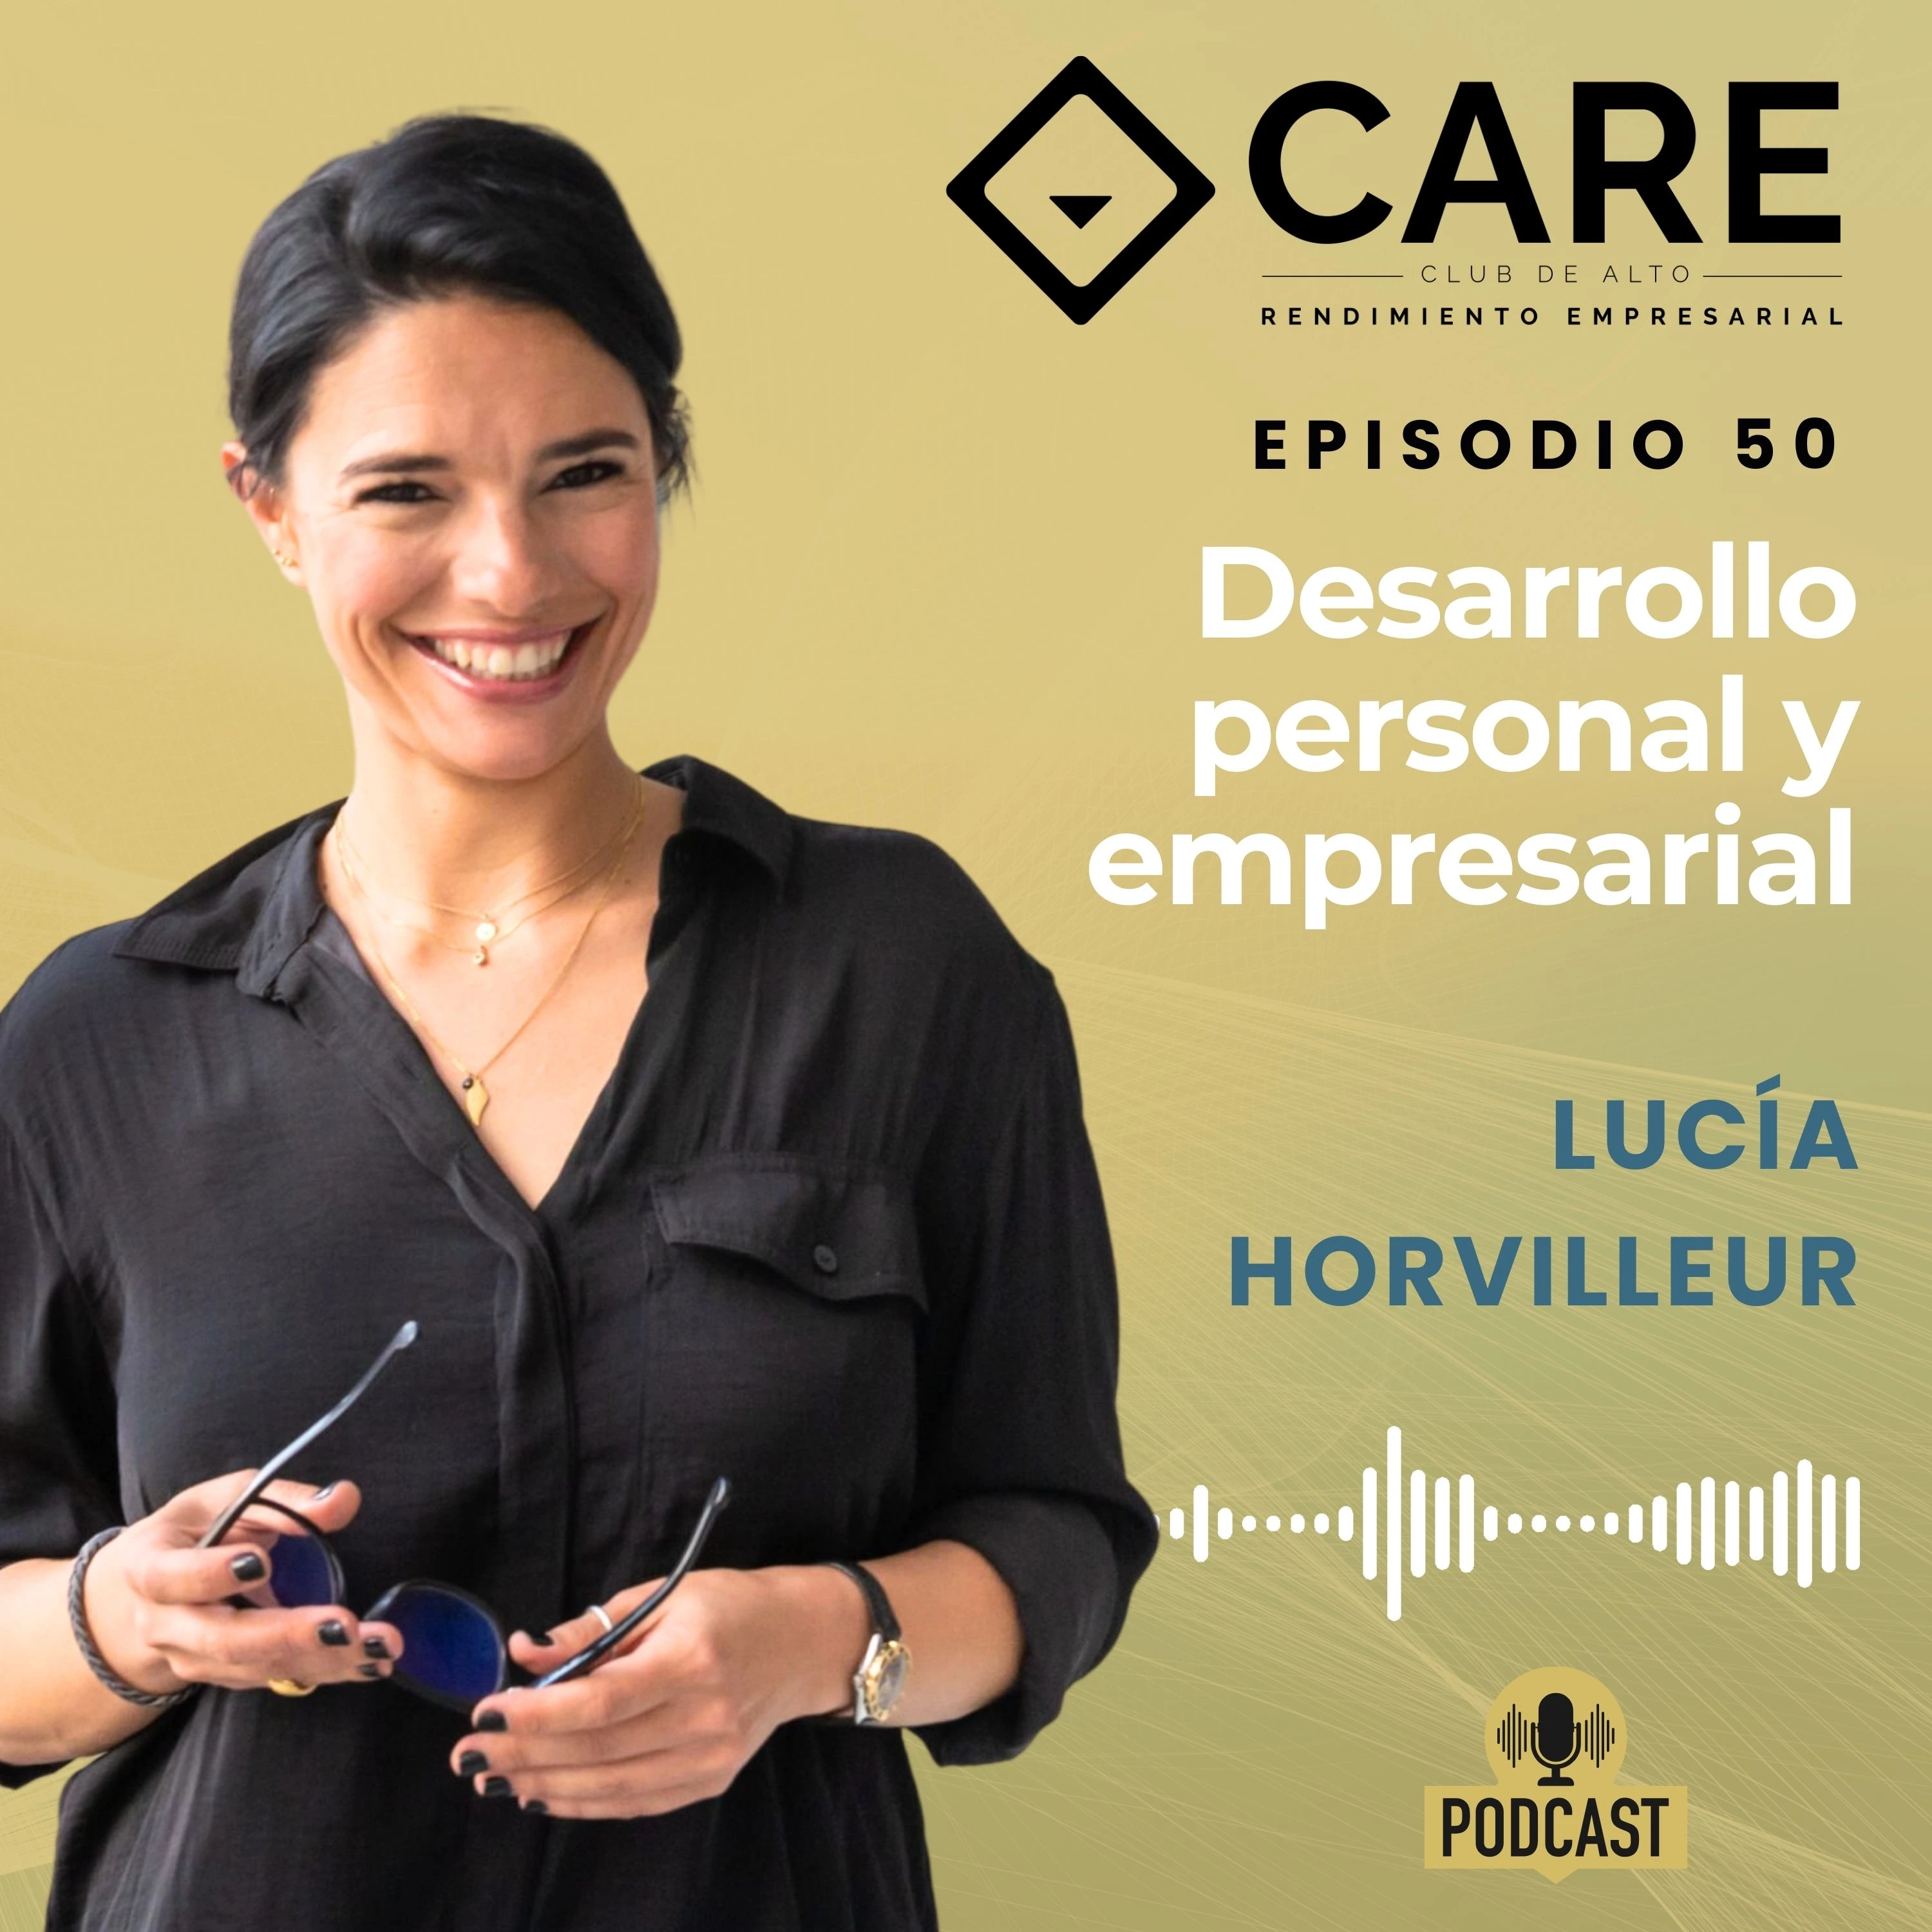 Episodio 50 - Desarrollo personal y empresarial, con Lucía Horvilleur - Club de Alto Rendimiento Empresarial